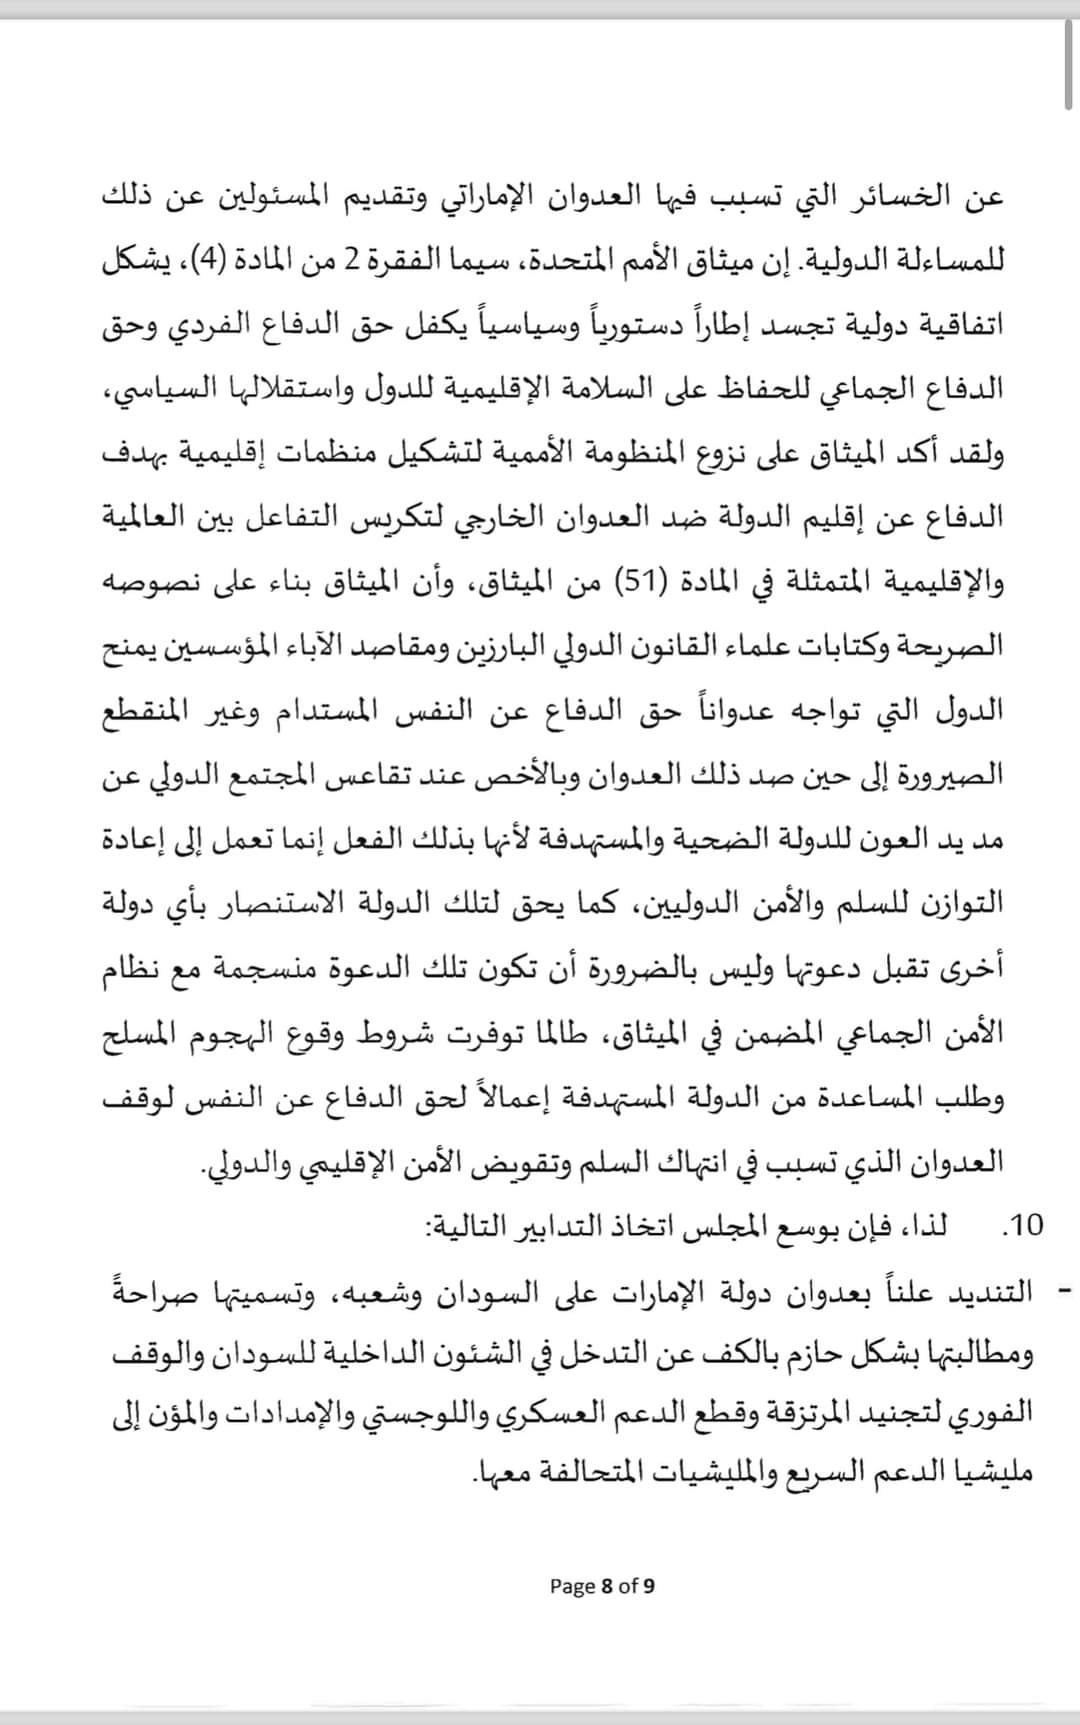 السودان يقدم شكوى رسمية ضد الإمارات لمجلس الأمن الدول..النص الكامل والصورة